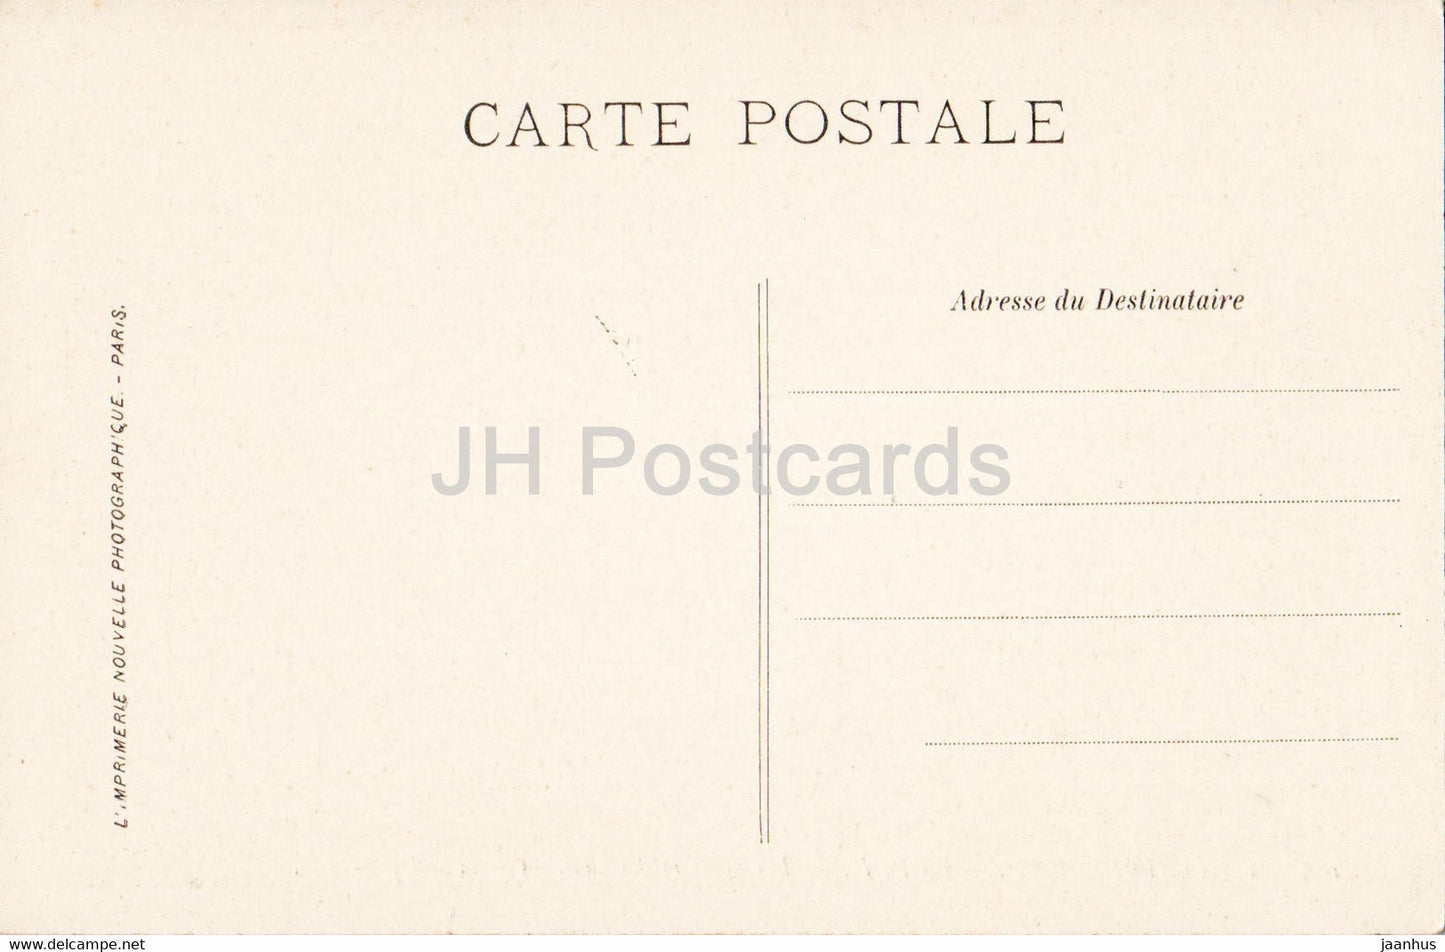 Fontainebleau - La Foret - Les Sentiers des hauteurs de la Solle - 185 - old postcard - France - used